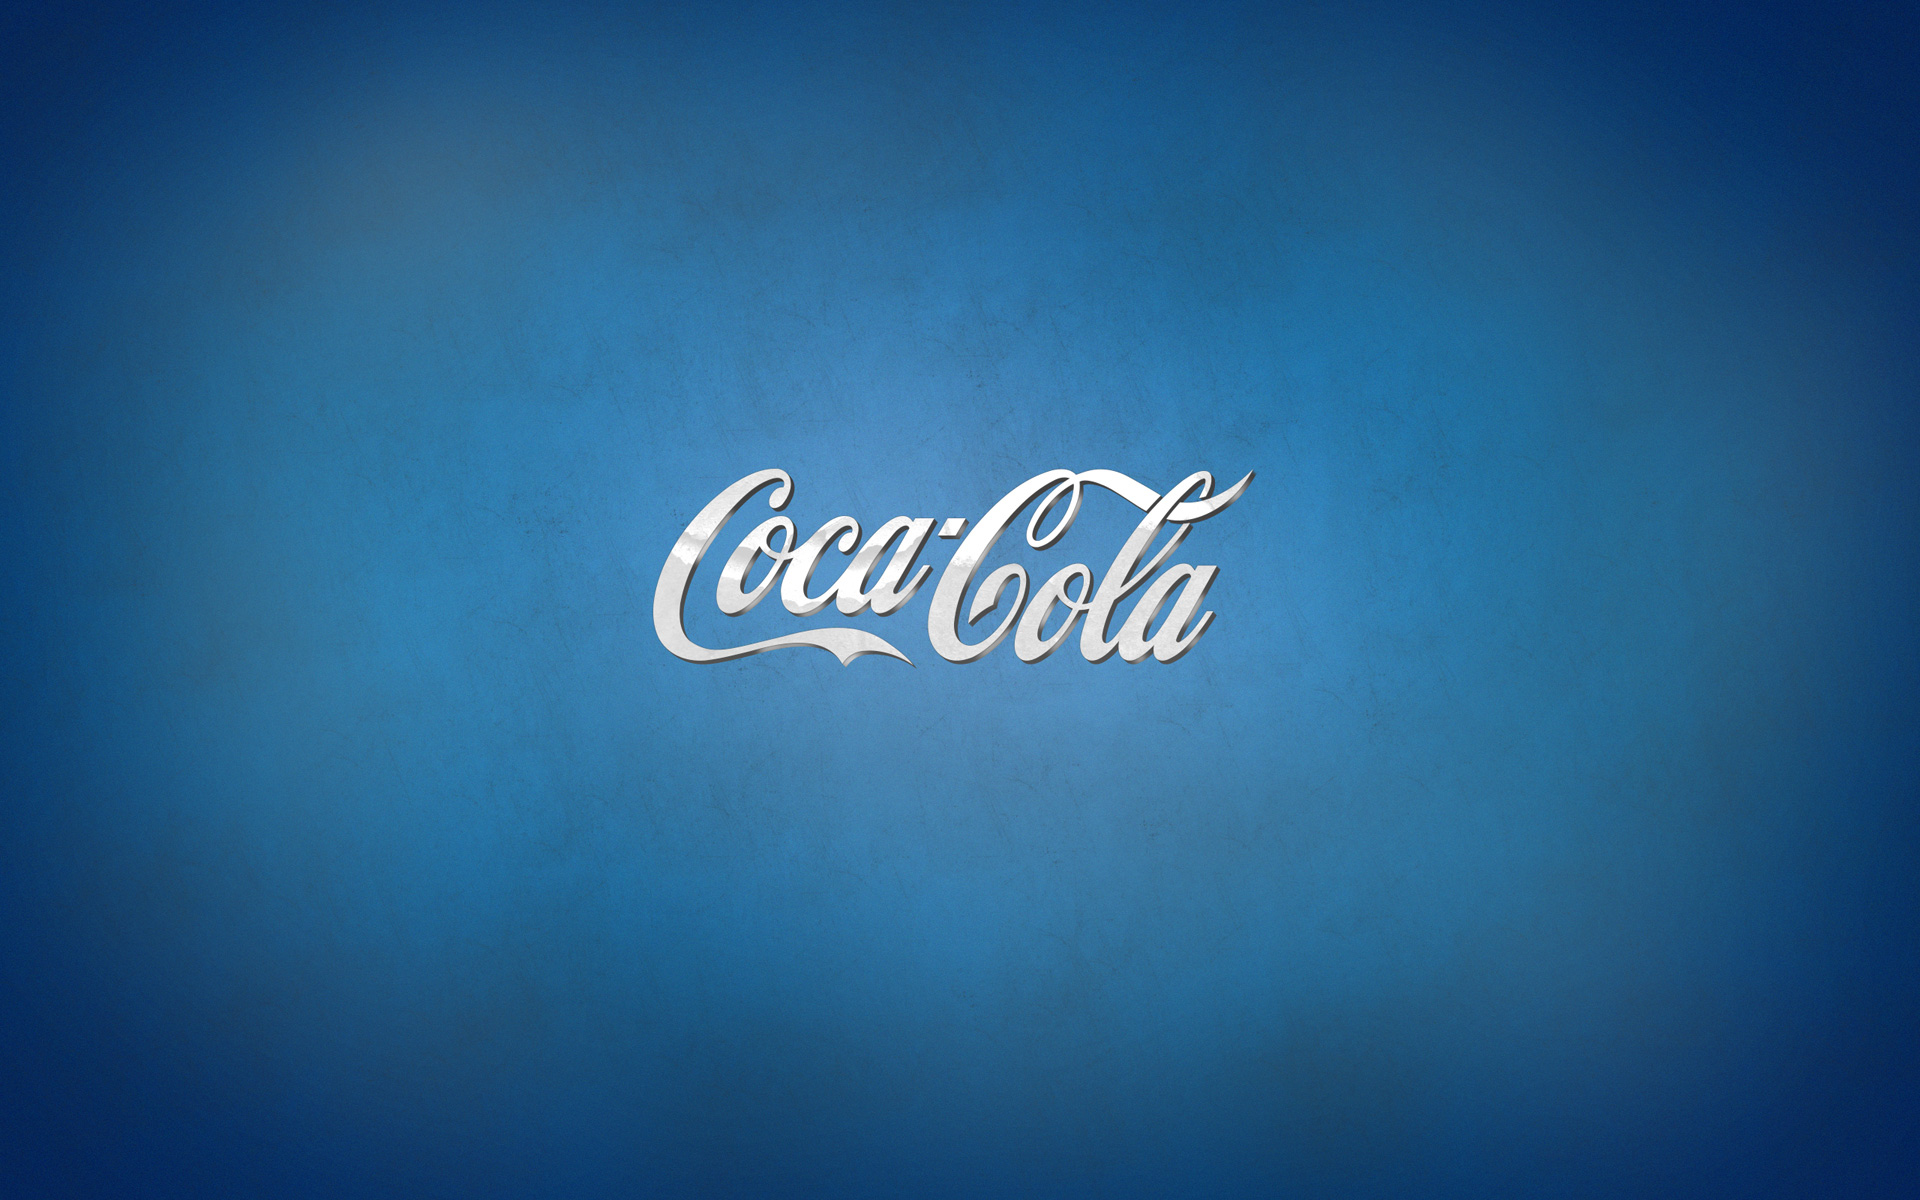 Coca-Cola 1920x1200 002